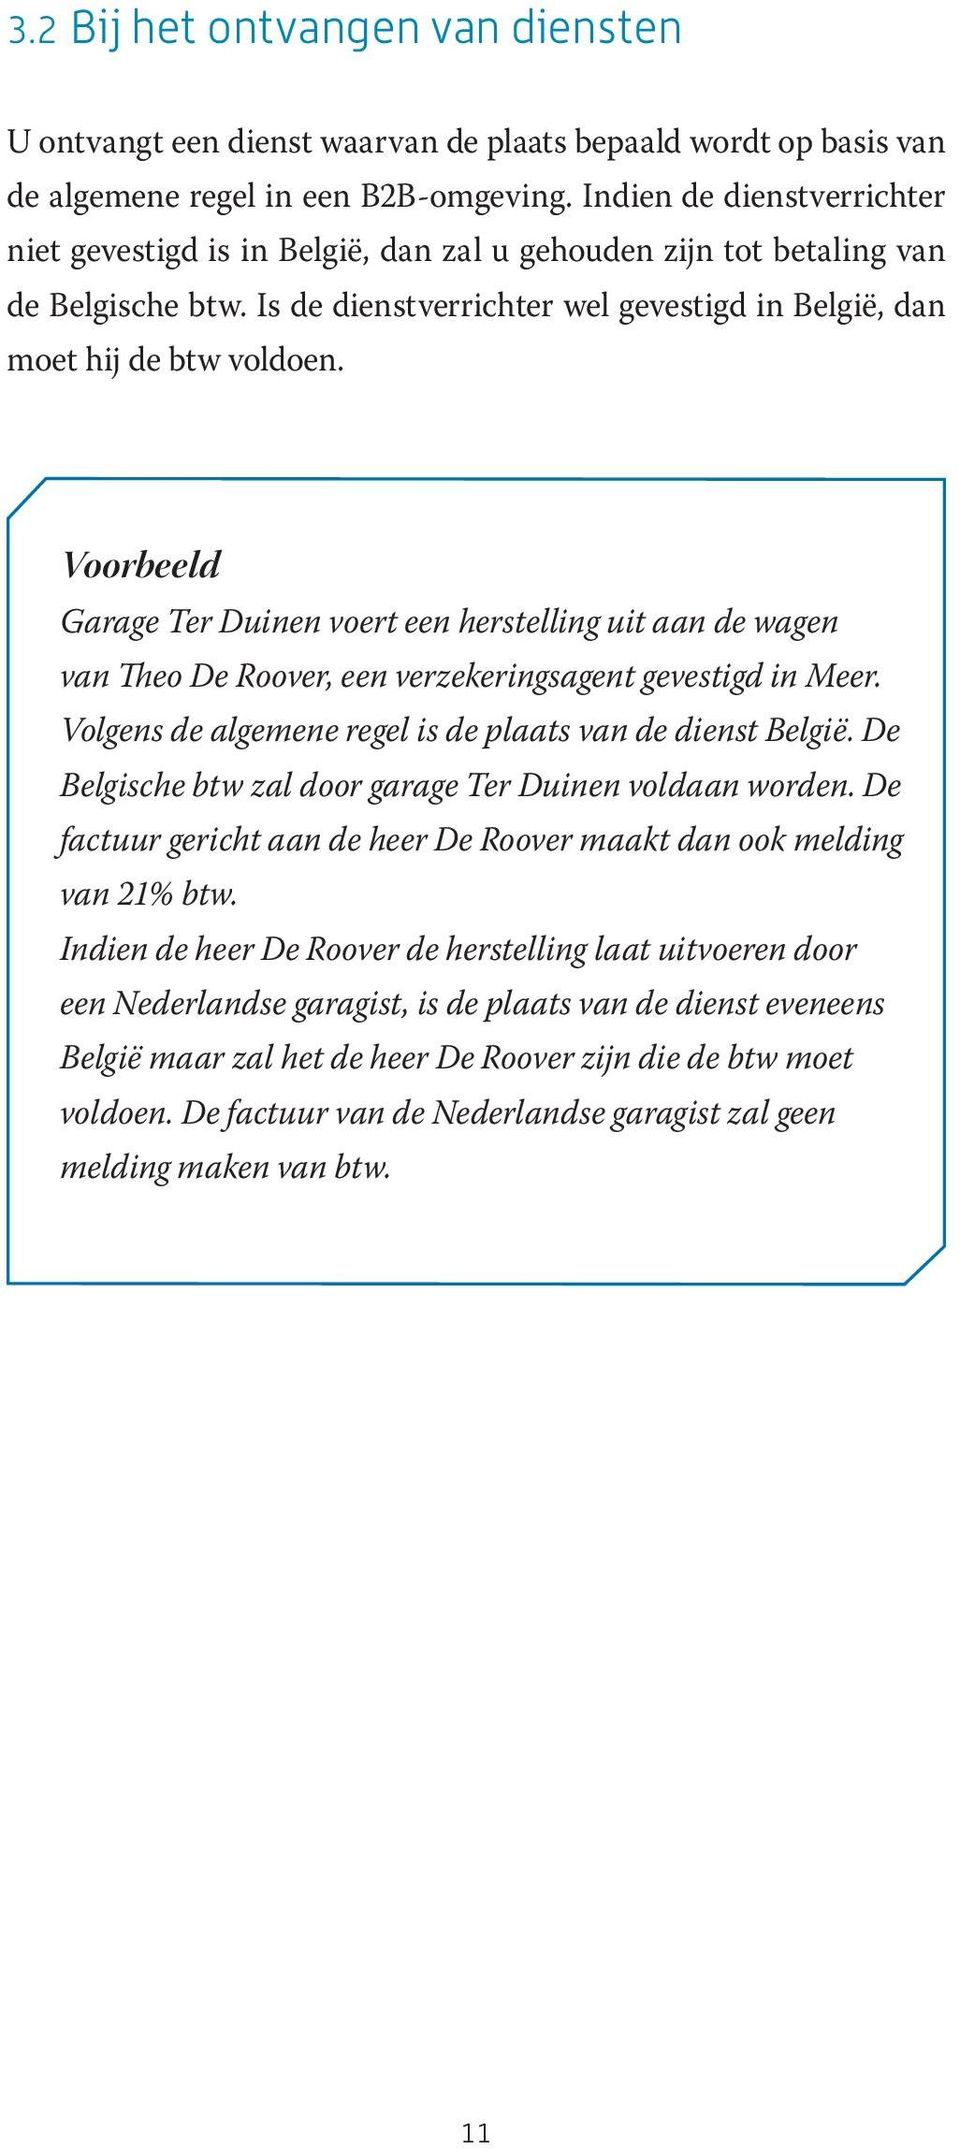 Voorbeeld Garage Ter Duinen voert een herstelling uit aan de wagen van Theo De Roover, een verzekeringsagent gevestigd in Meer. Volgens de algemene regel is de plaats van de dienst België.